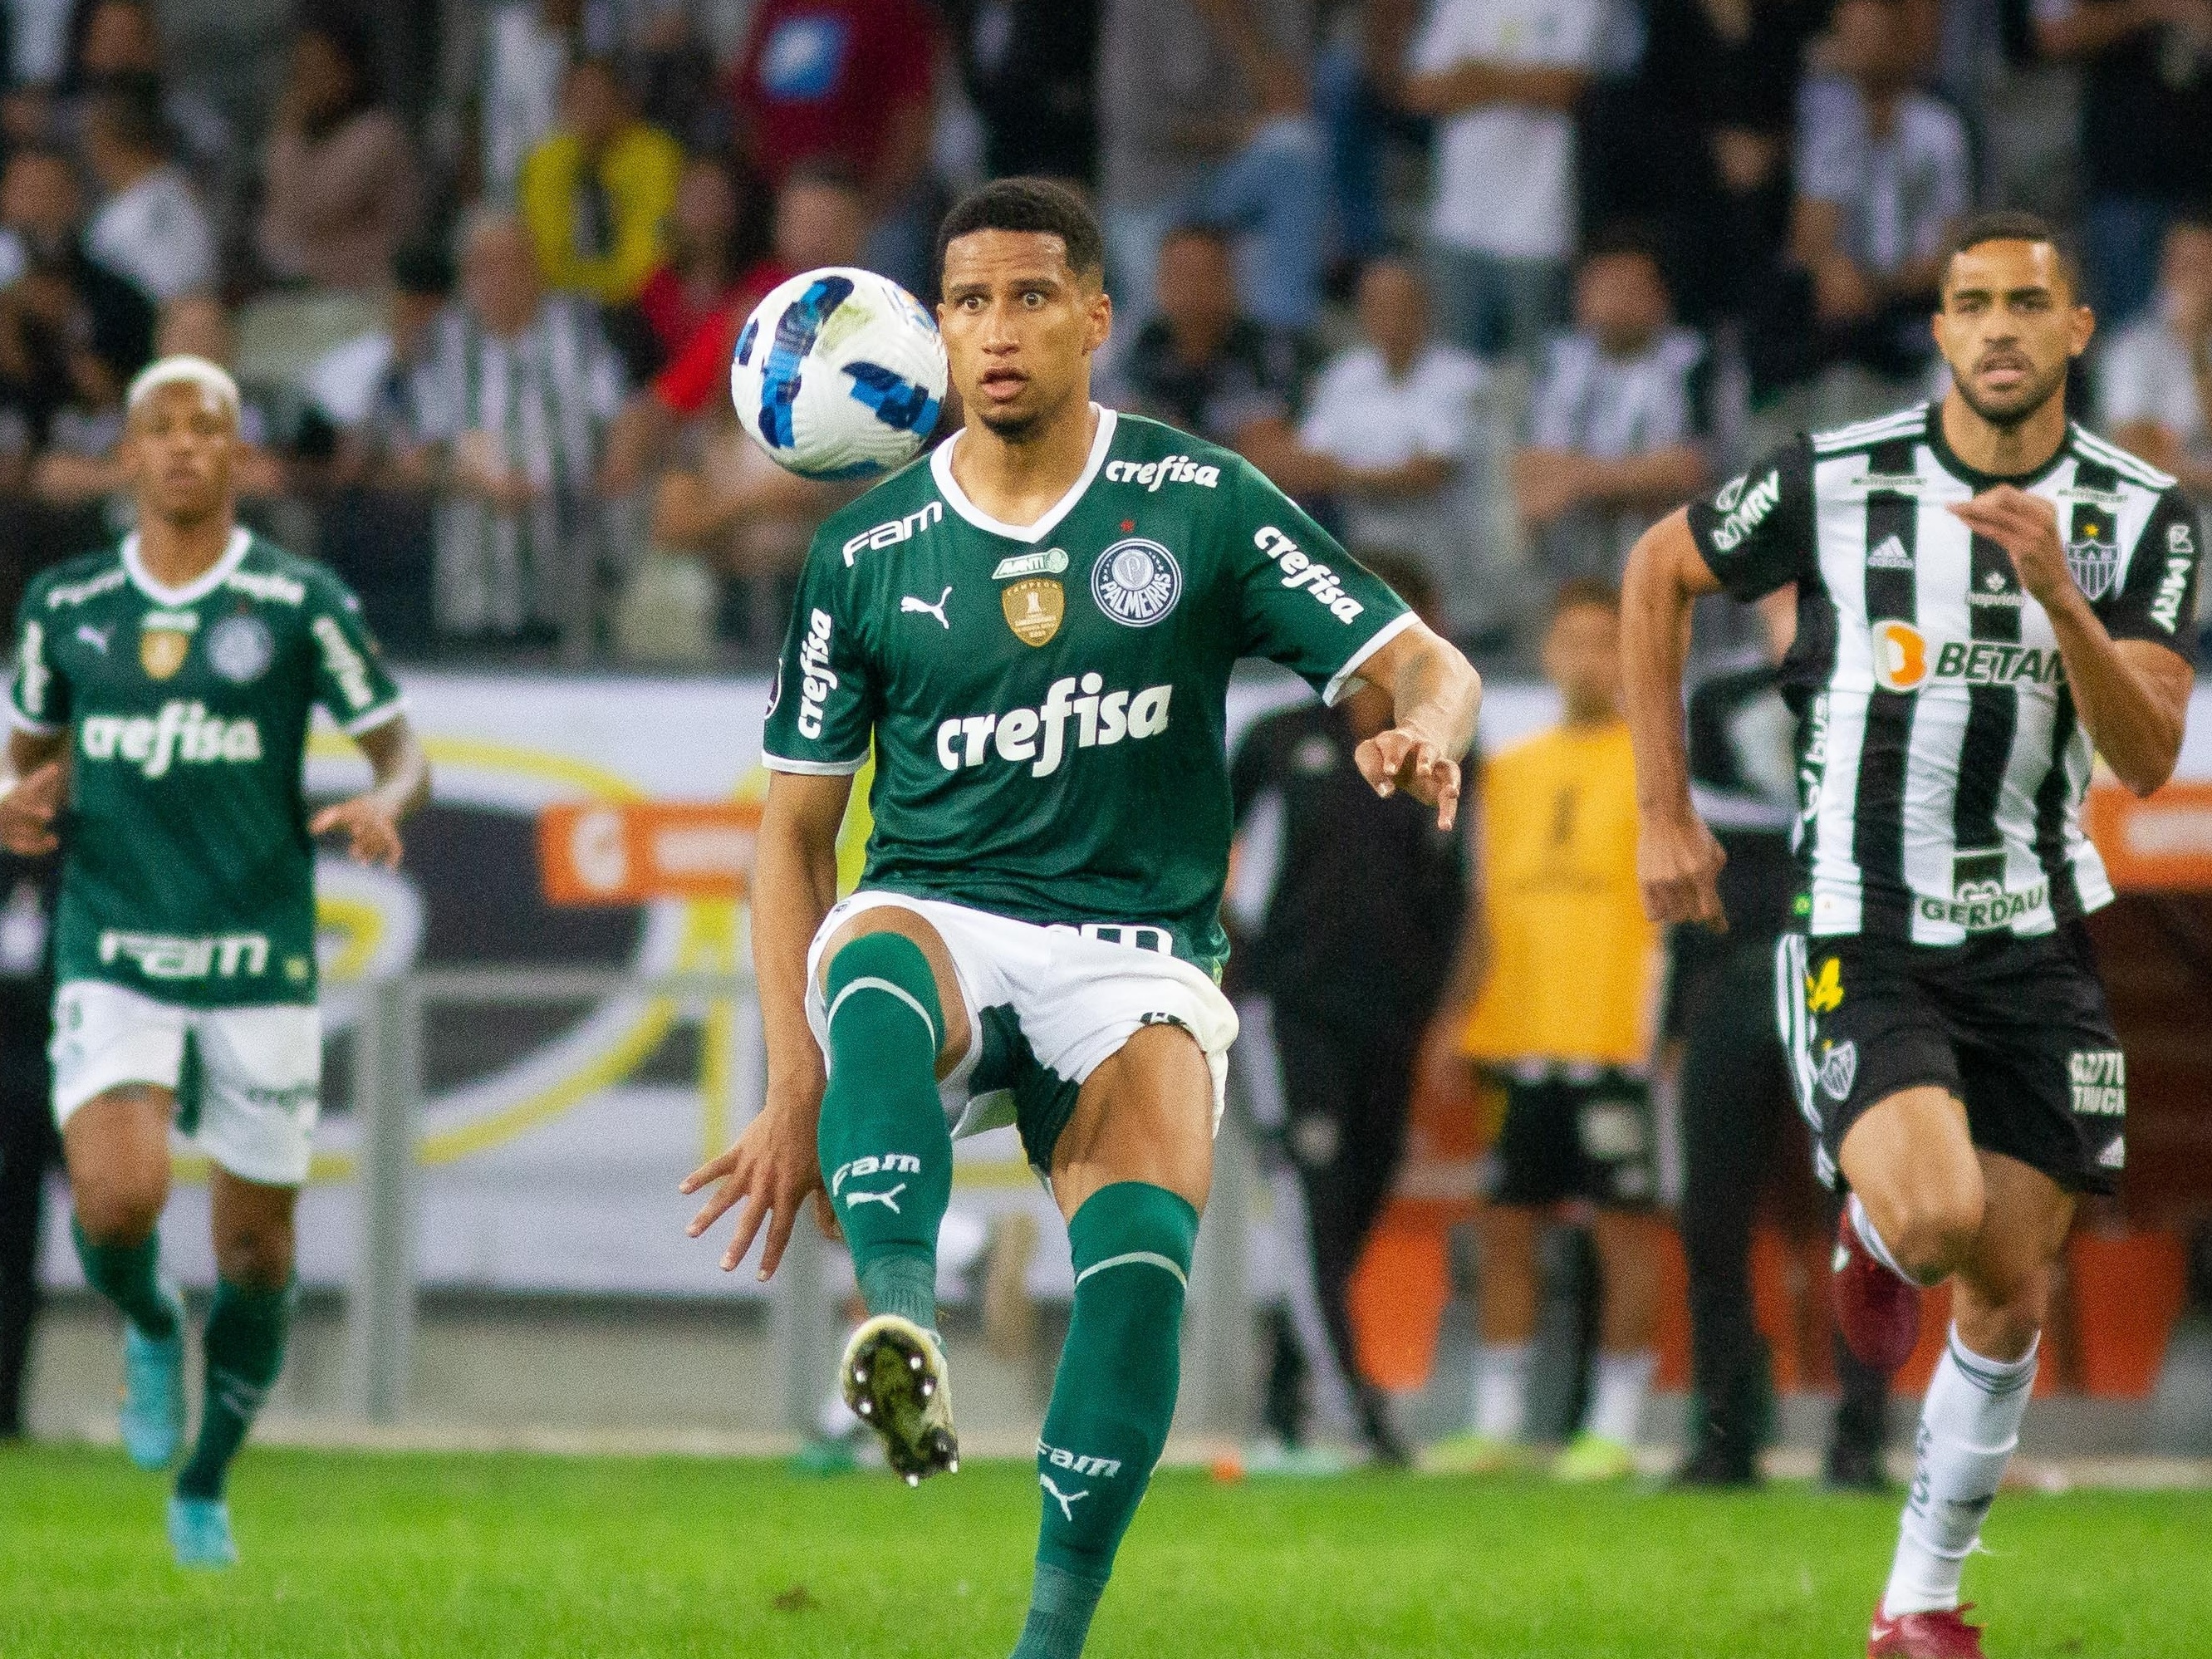 Único paulista na Libertadores, Palmeiras enfrenta o Atlético-MG nas  oitavas - Diário de Suzano